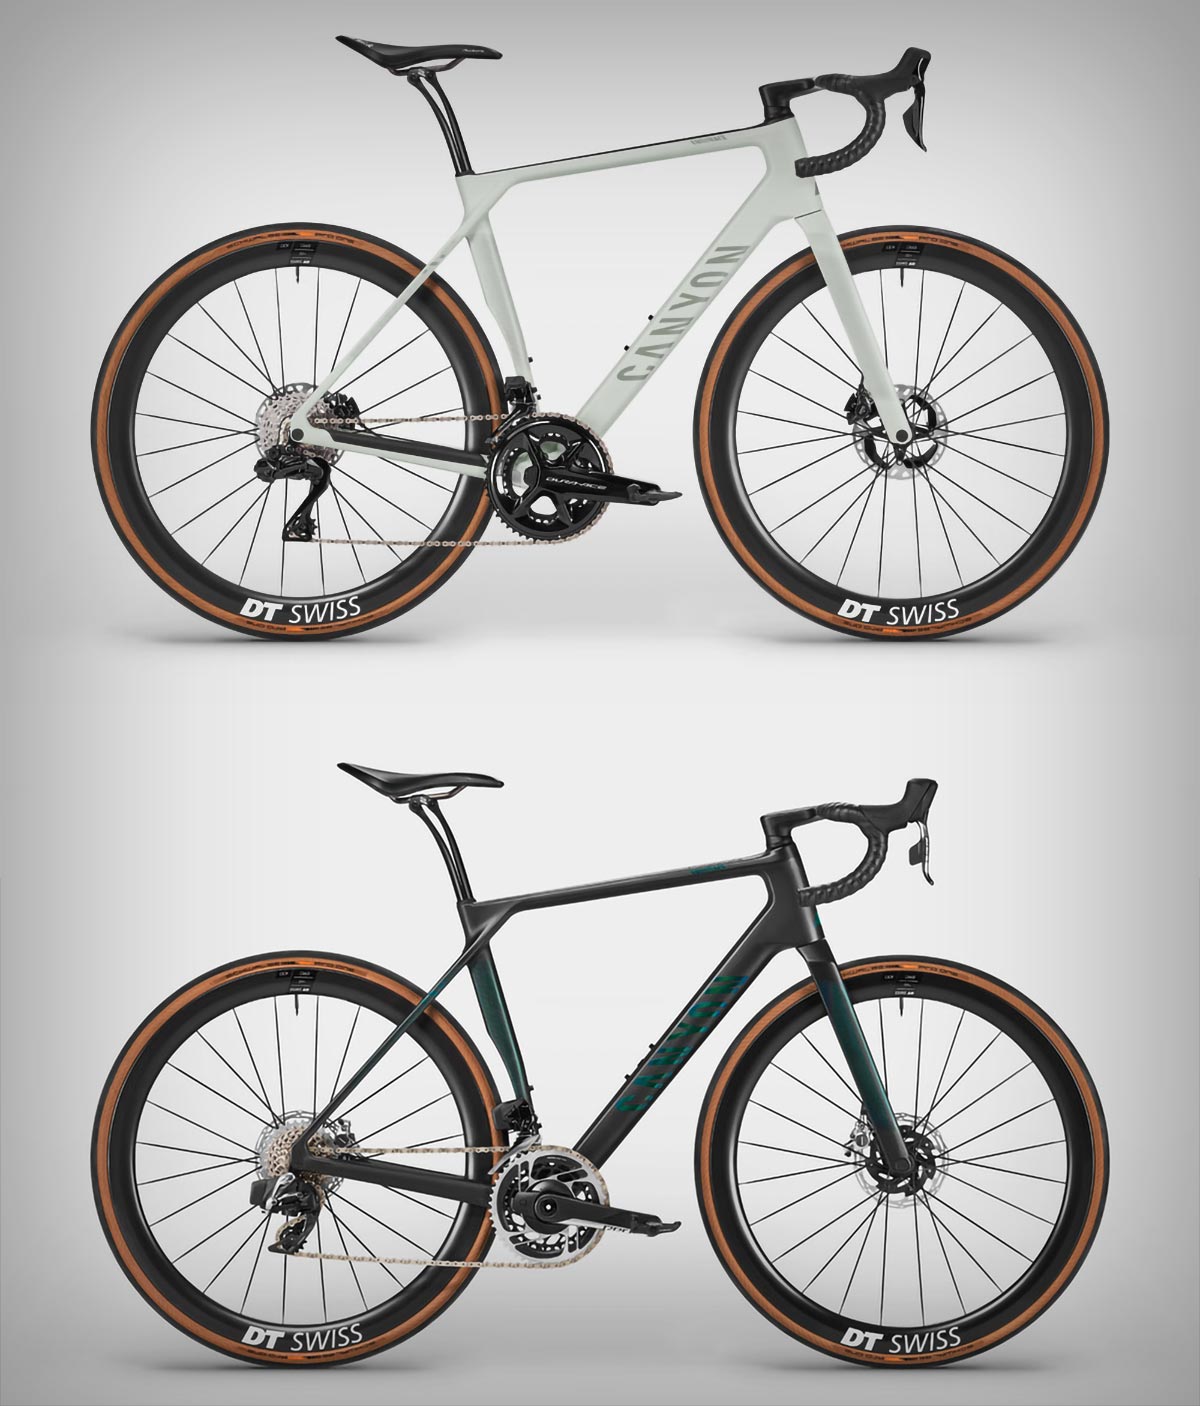 Canyon presenta las Endurace CFR y CF SLX, sus bicicletas de resistencia más rápidas